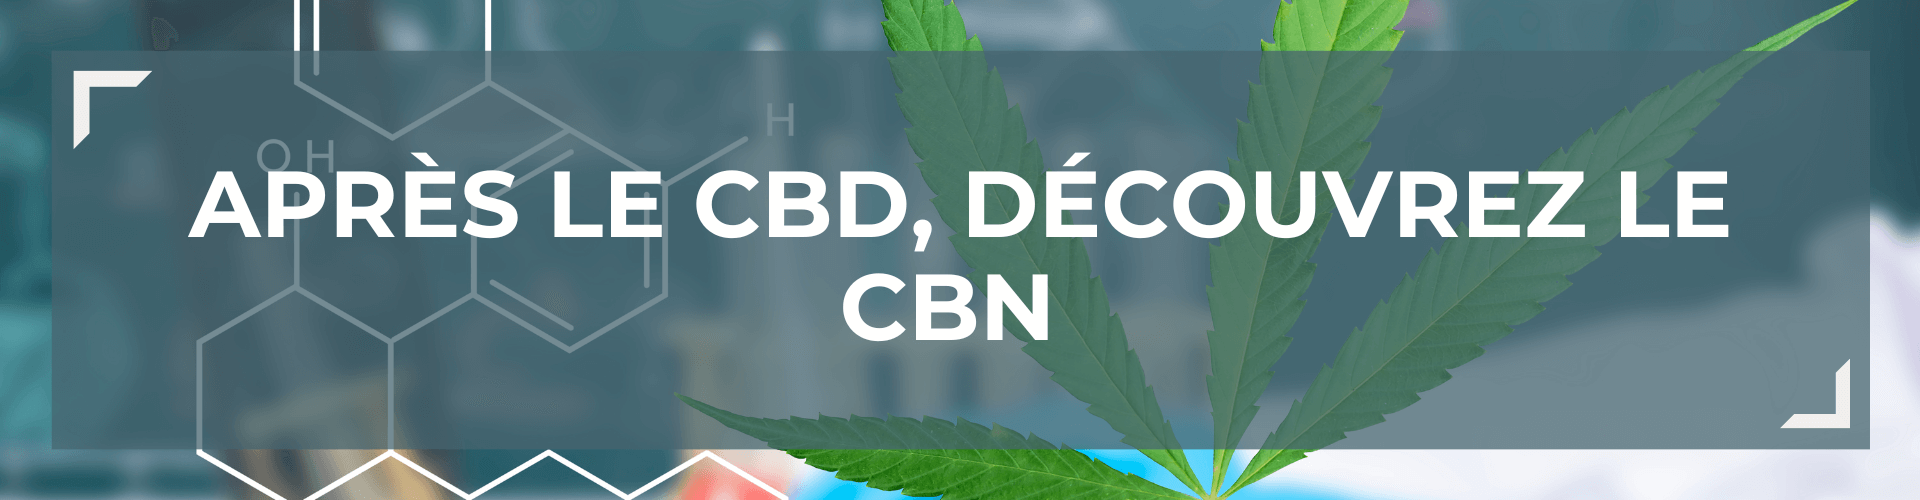 Après le CBD, découvrez le CBN avec notre guide complet